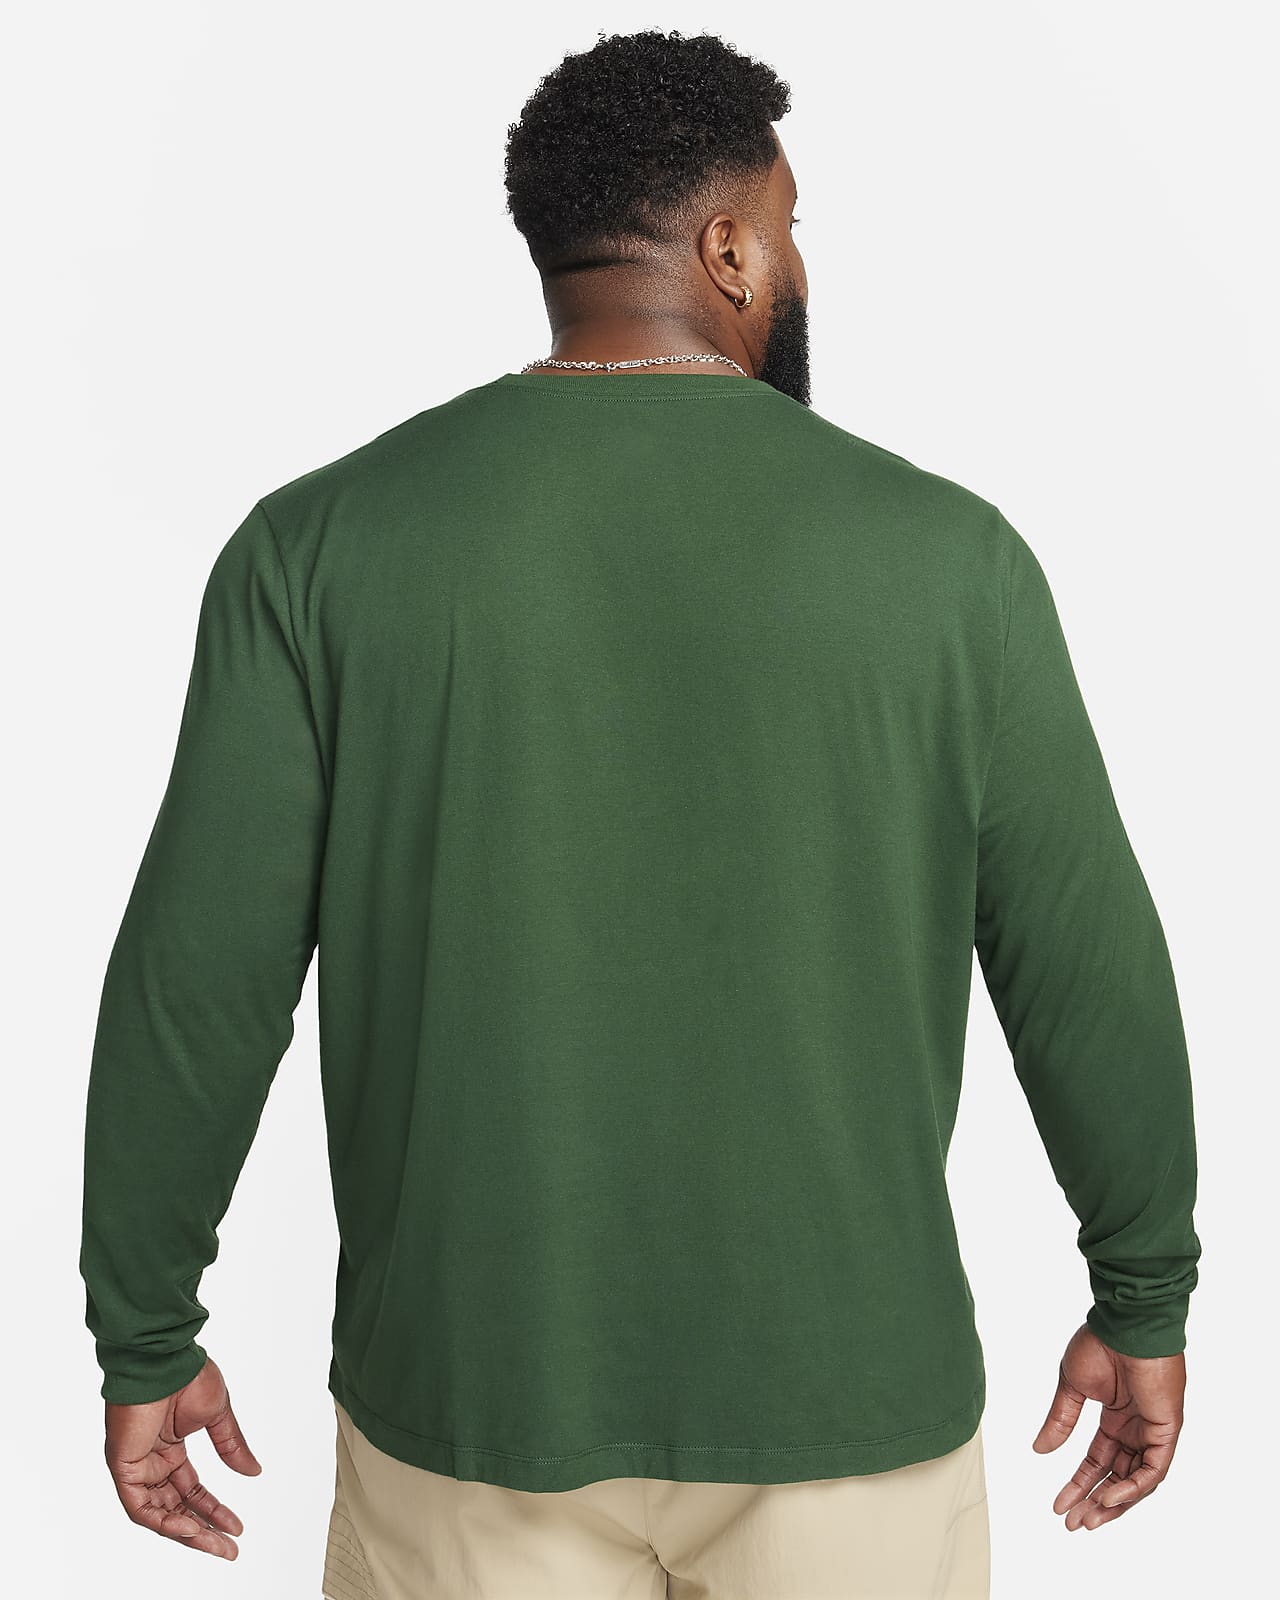 Buy Nike Sportswear Men's Long-Sleeve T-Shirt 2024 Online